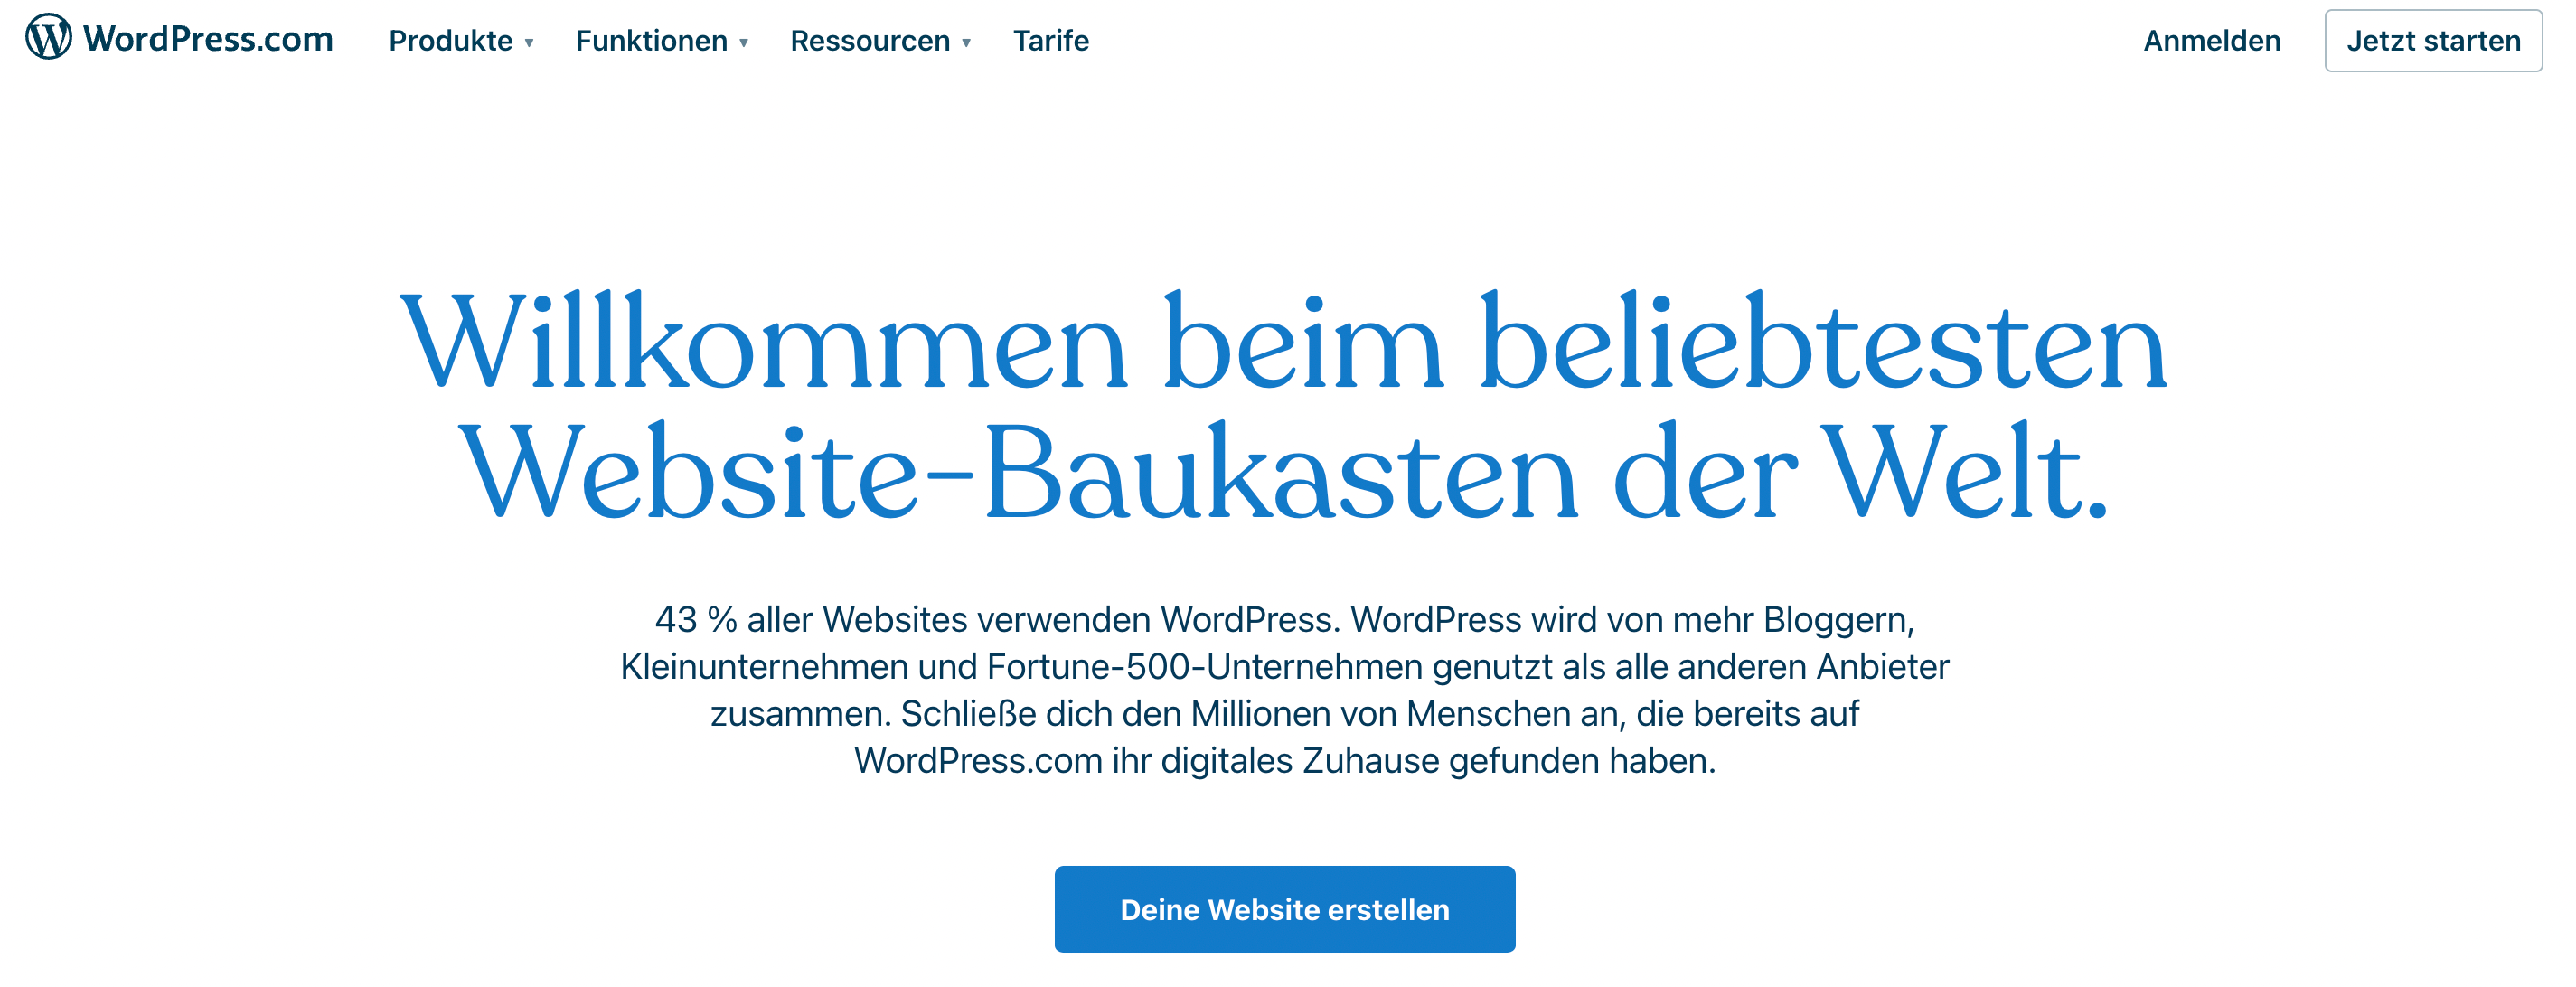 Eigene Website erstellen mit WordPress